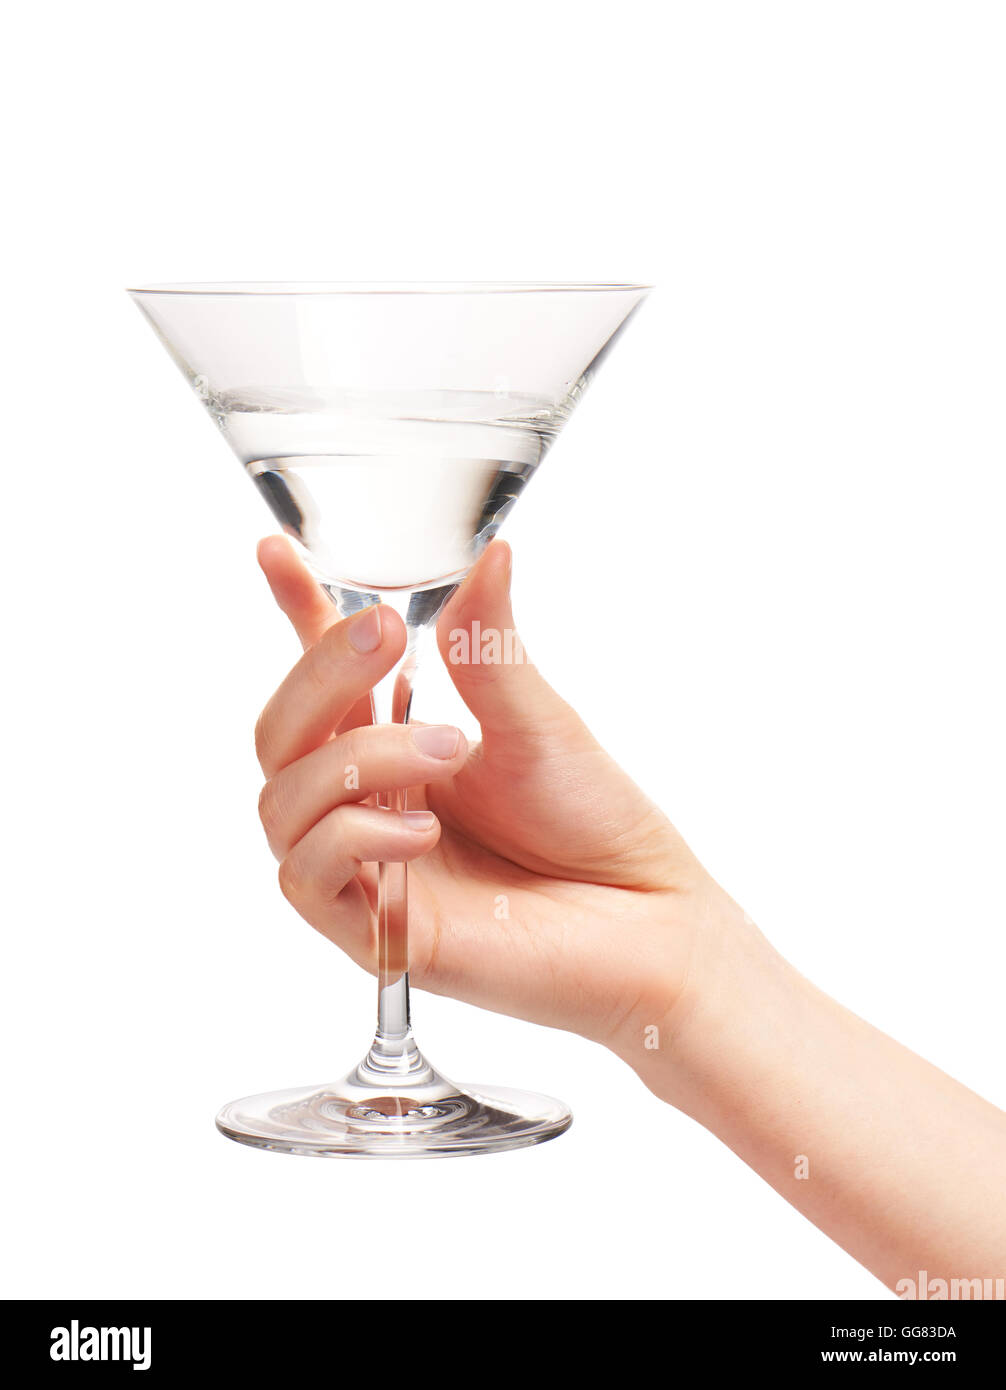 Nahaufnahme von weiblicher Hand hält sauber transparent Martini-Glas mit Wasser vor weißem Hintergrund. Clipping-Pfad enthalten Stockfoto